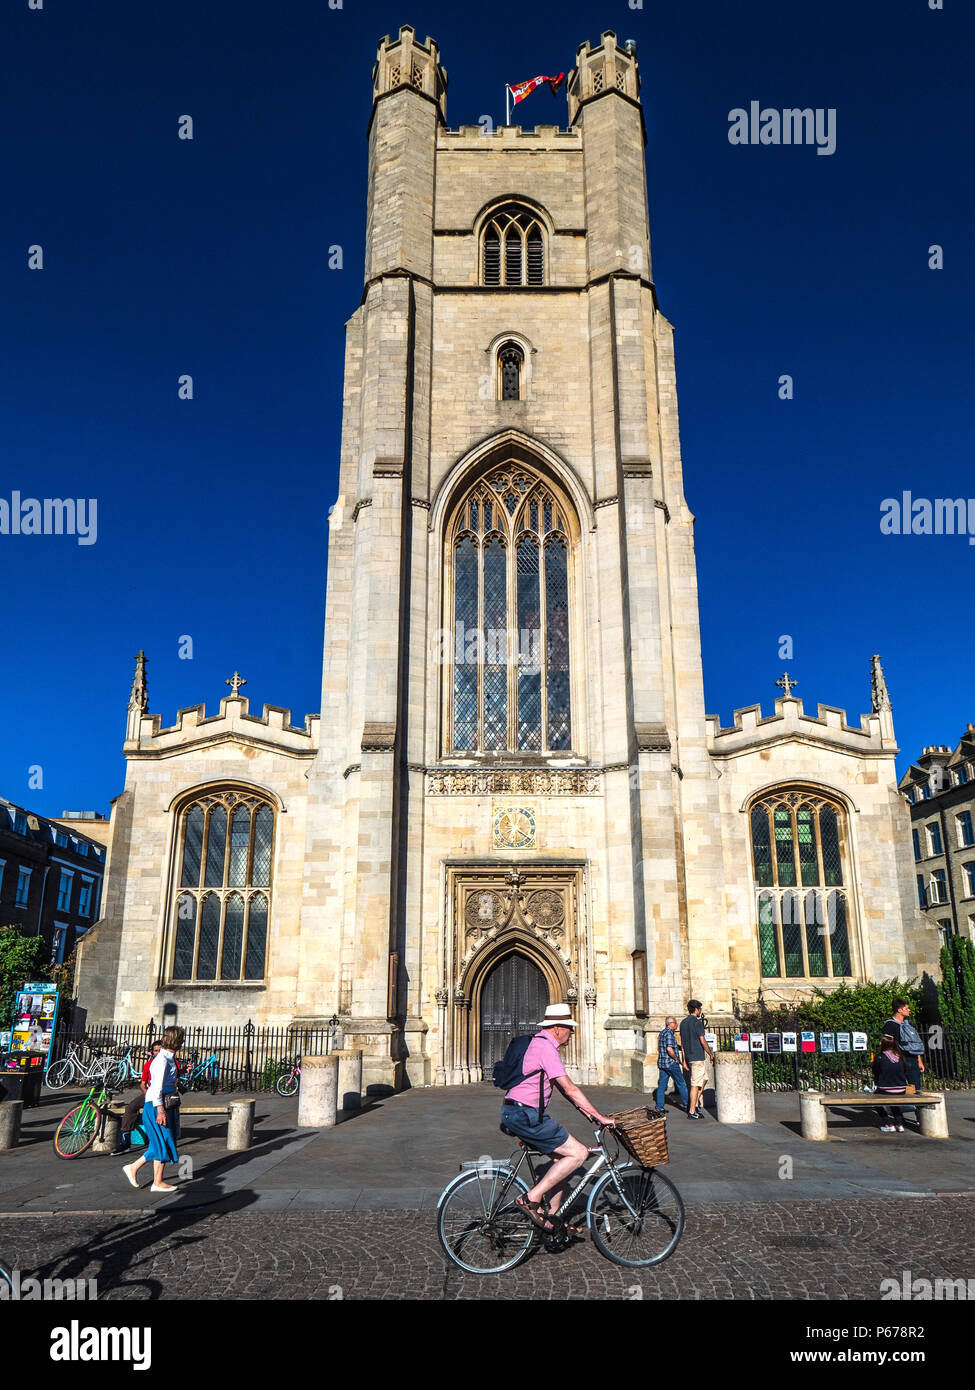 Cambridge Tourism - les cyclistes passent devant l'église de la Grande St Mary dans le centre de Cambridge. L'église, reconstruite après un incendie en 1290, est Cambridge University Churc Banque D'Images